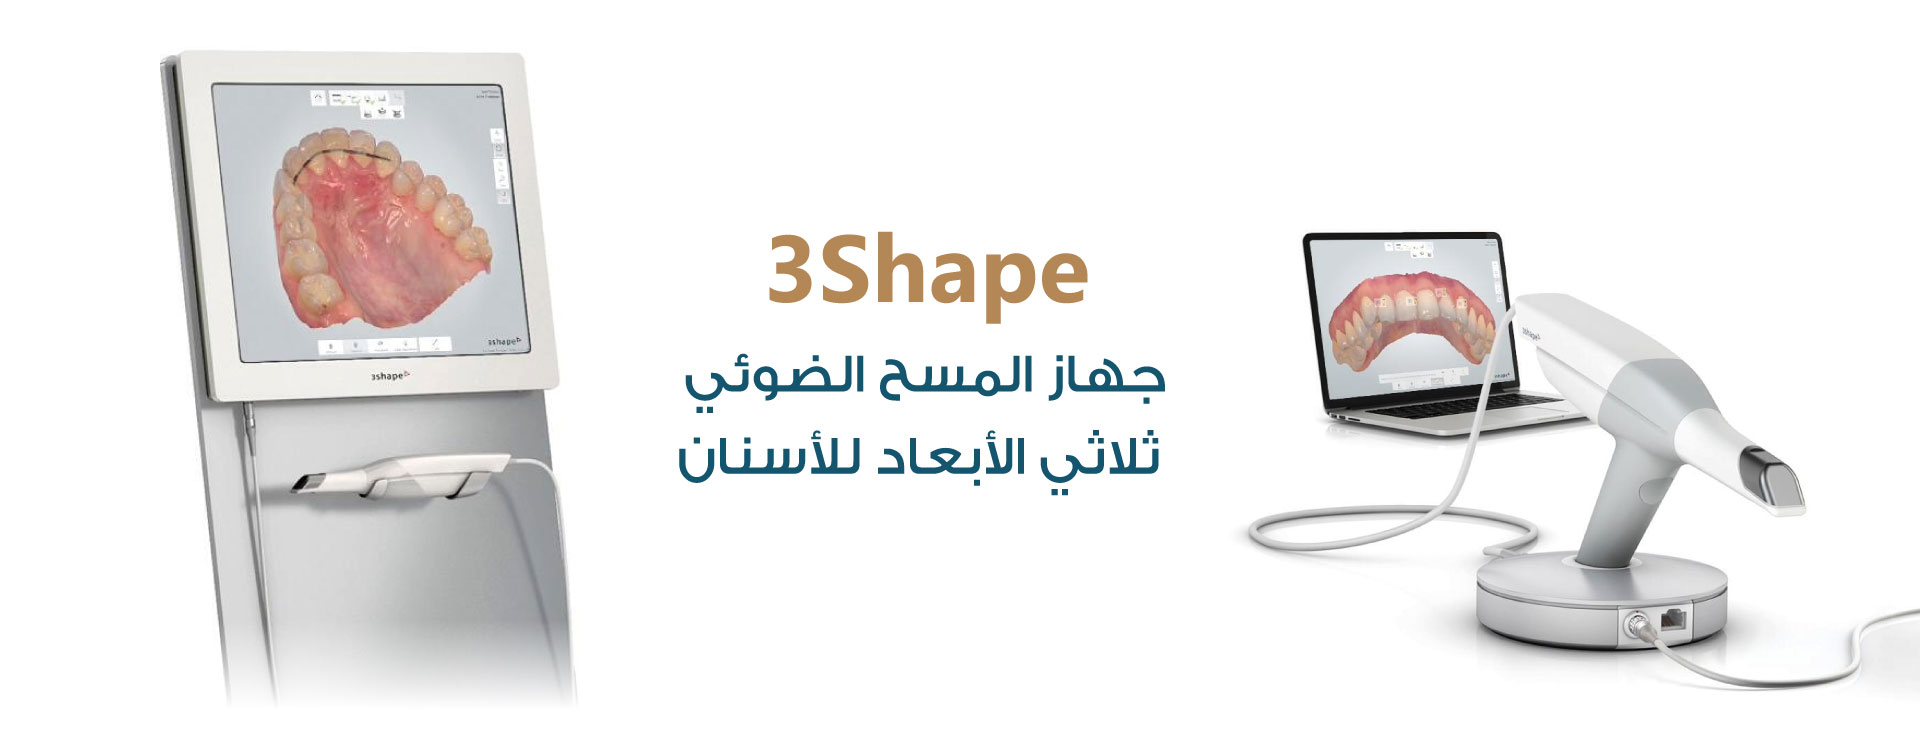 جهاز 3Shape - جهاز المسح الضوئي ثلاثي الأبعاد - مركز سكن اند تيث الطبي